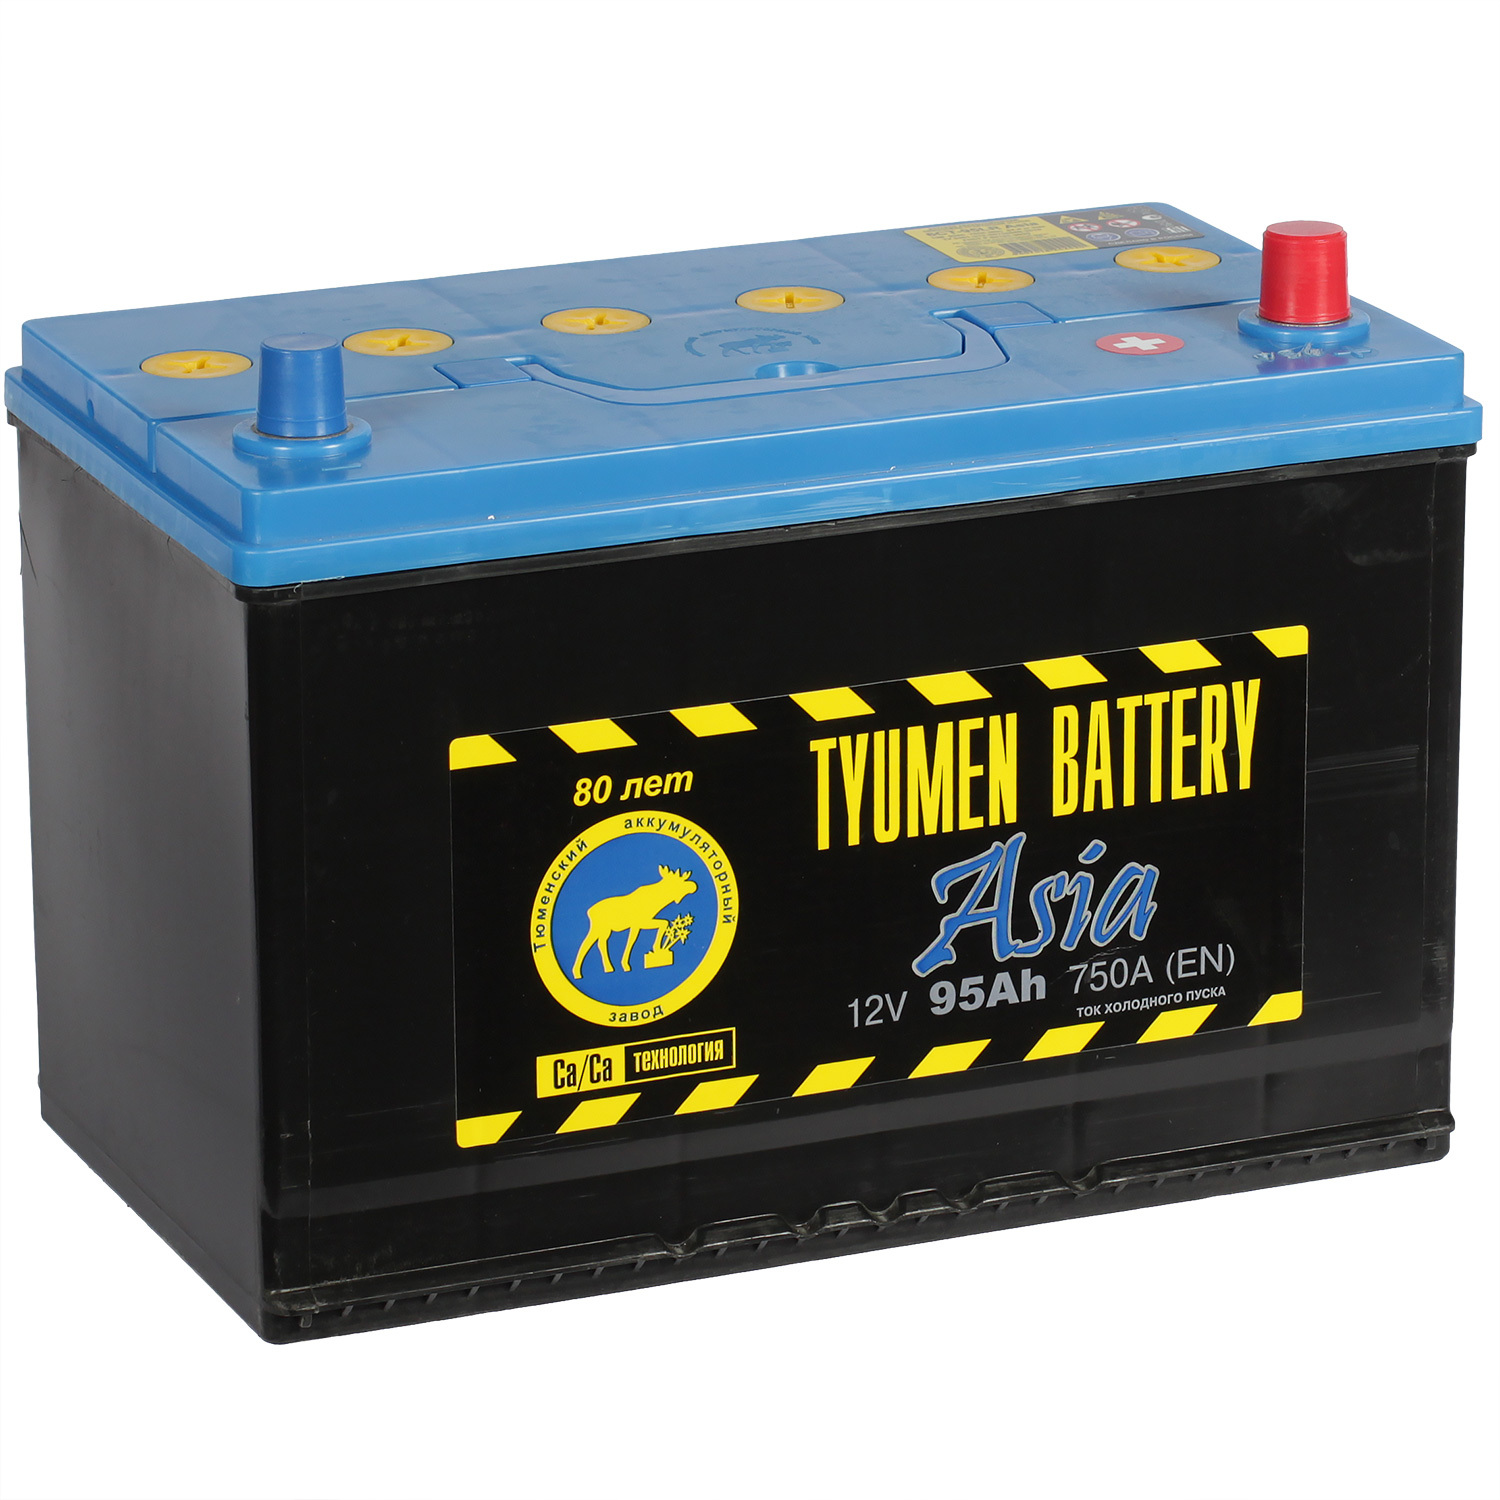 Tyumen Battery Автомобильный аккумулятор Tyumen Battery 95 Ач обратная полярность D31L exide автомобильный аккумулятор exide 95 ач обратная полярность d31l